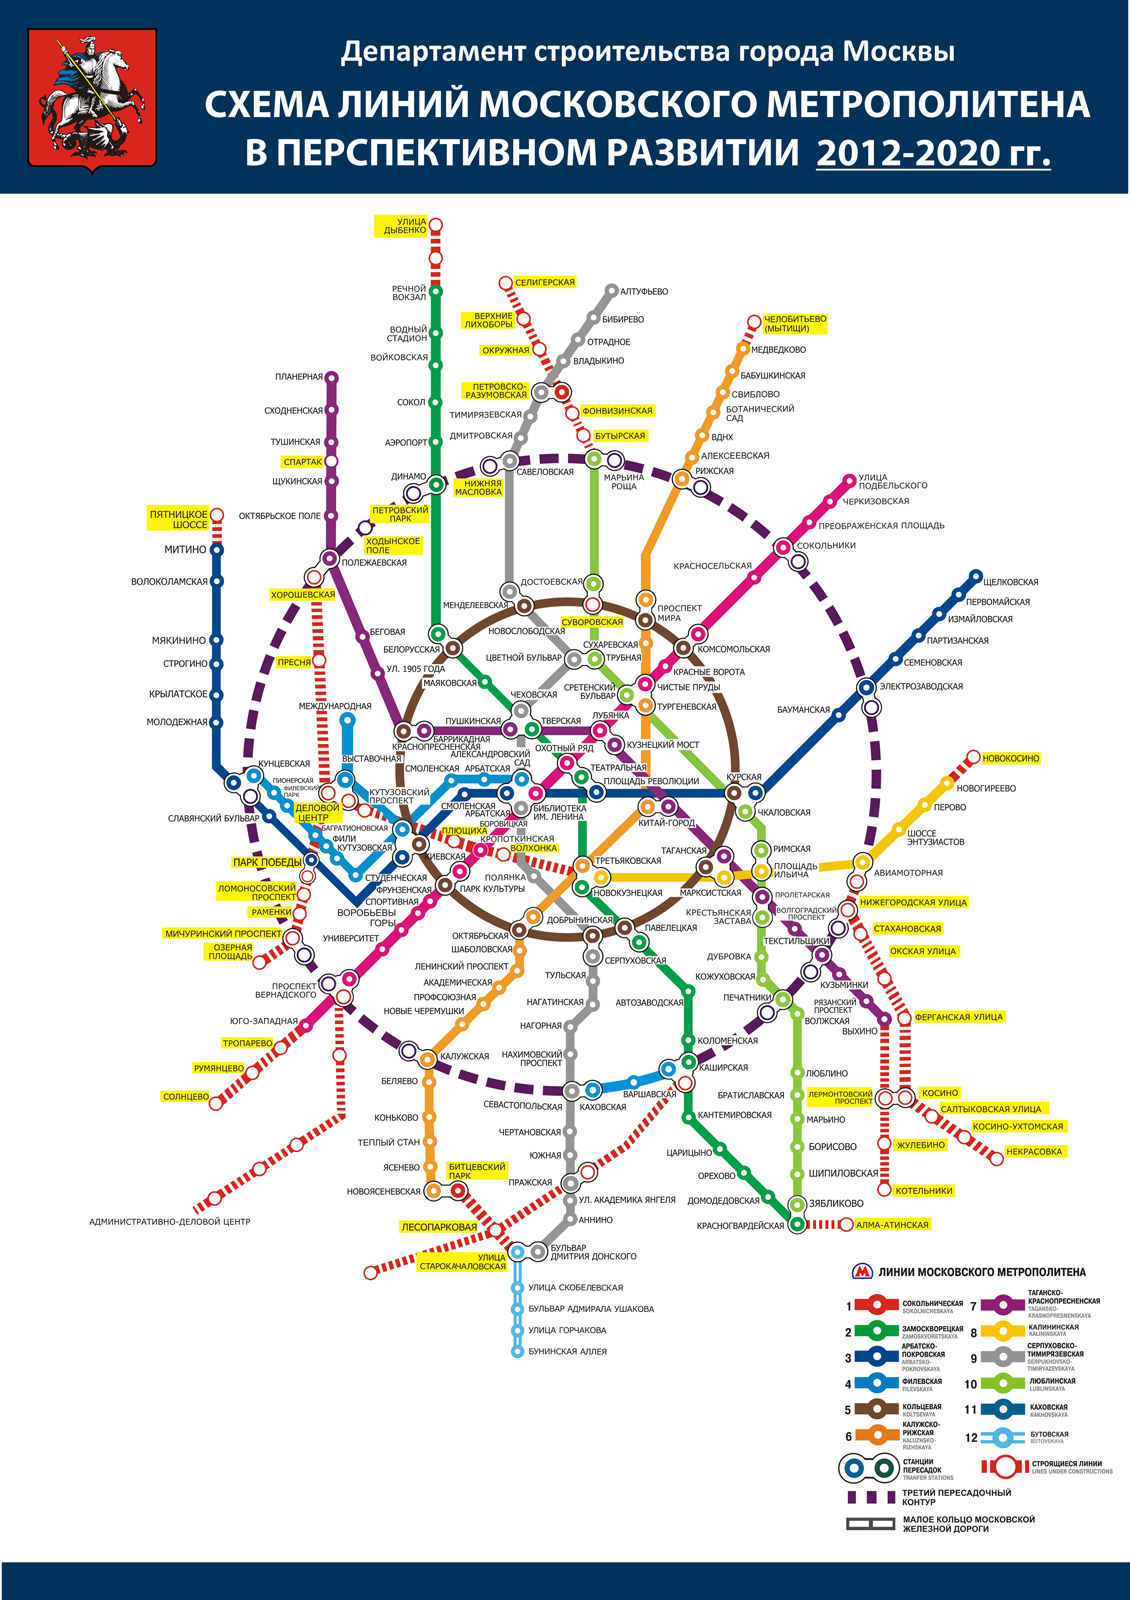 Официальная перспективная схема развития Московского метро на период 2012–2020 гг